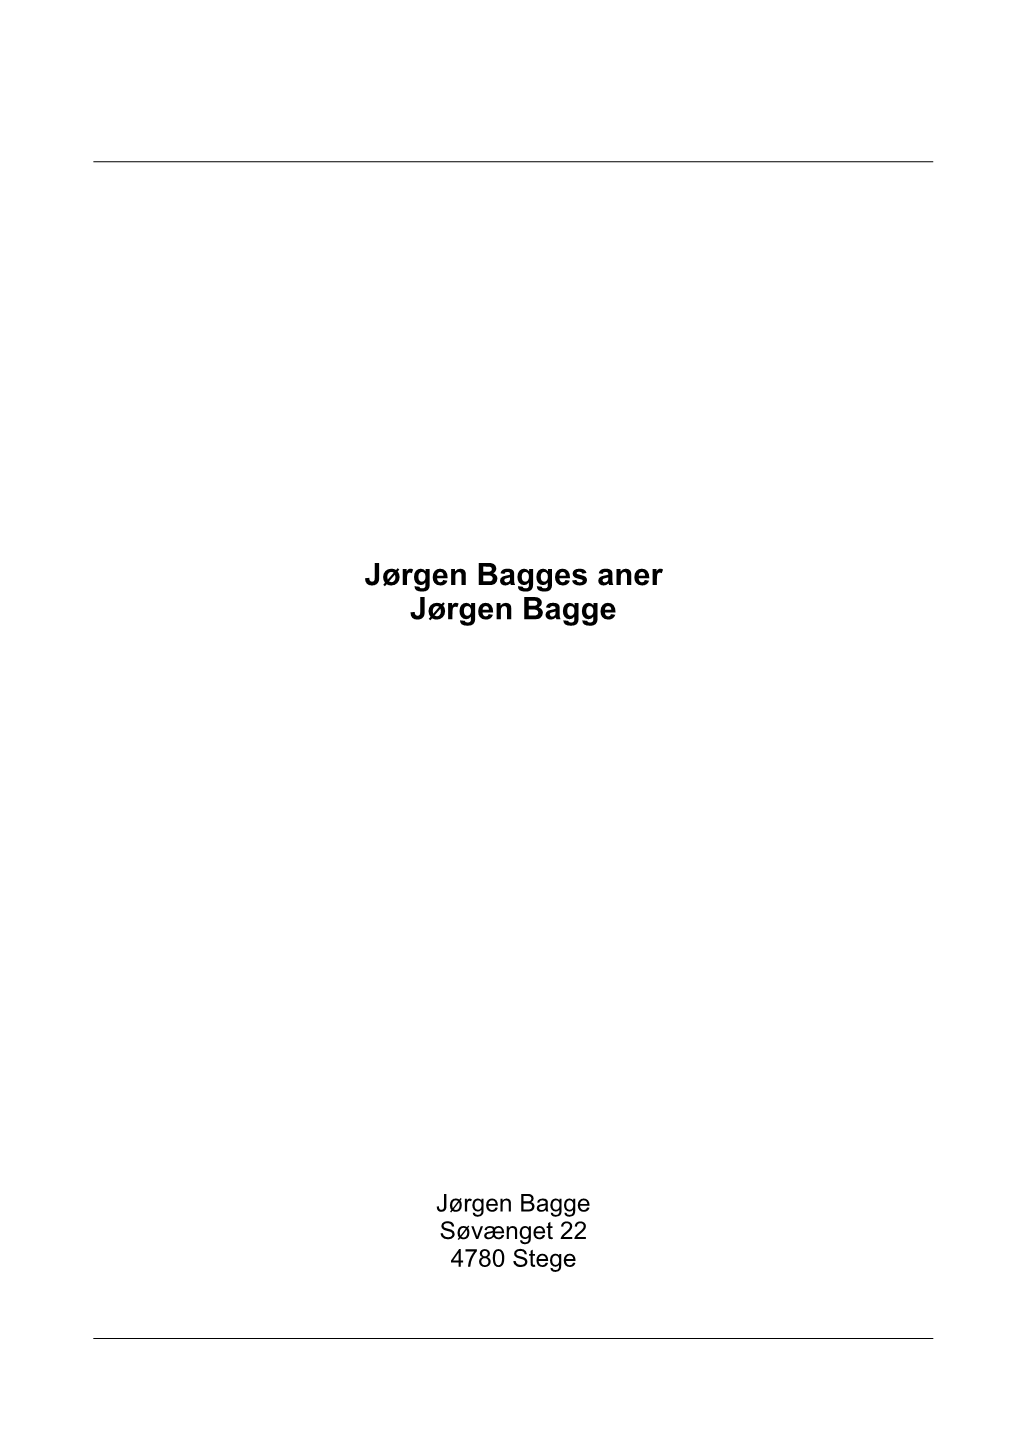 Jørgen Bagges Aner Jørgen Bagge